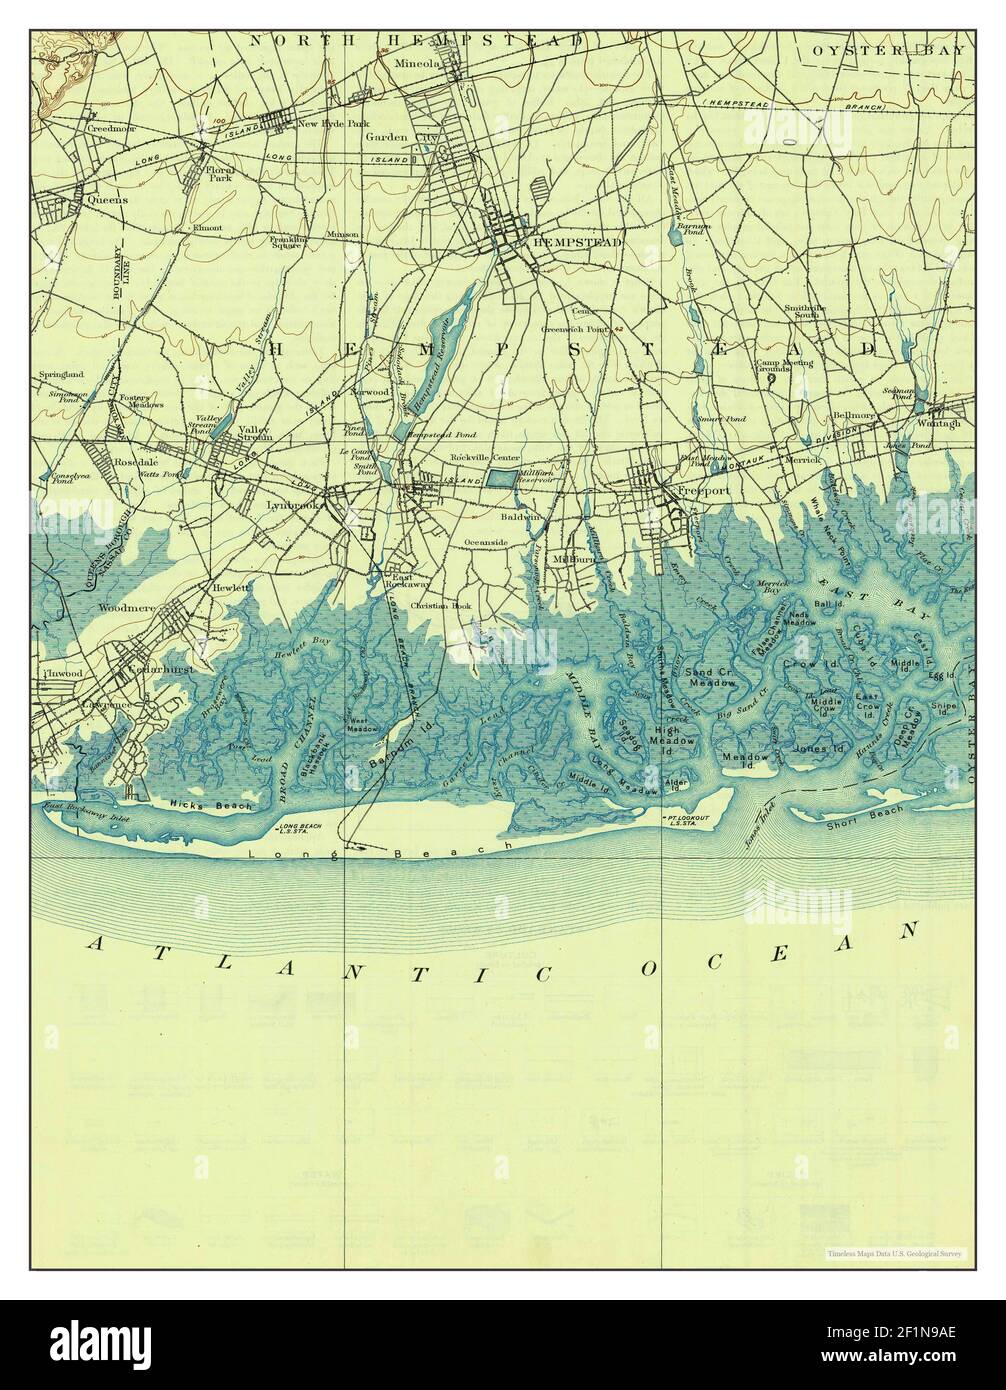 Hempstead, New York, Karte 1903, 1:62500, Vereinigte Staaten von Amerika von Timeless Maps, Daten U.S. Geological Survey Stockfoto